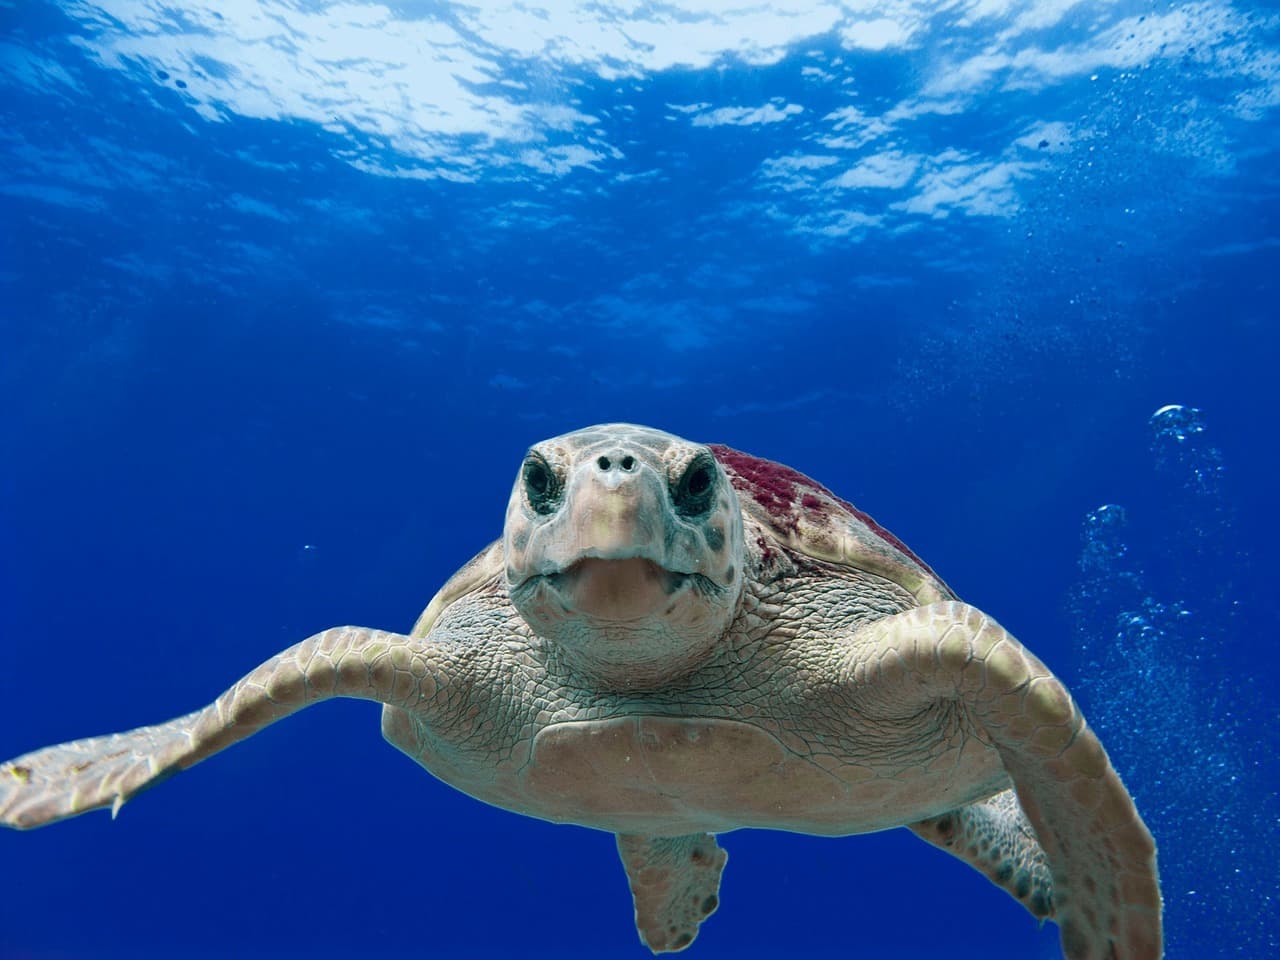 Teknősök segítségével jósolják meg az óceánok hőmérsékletének változását